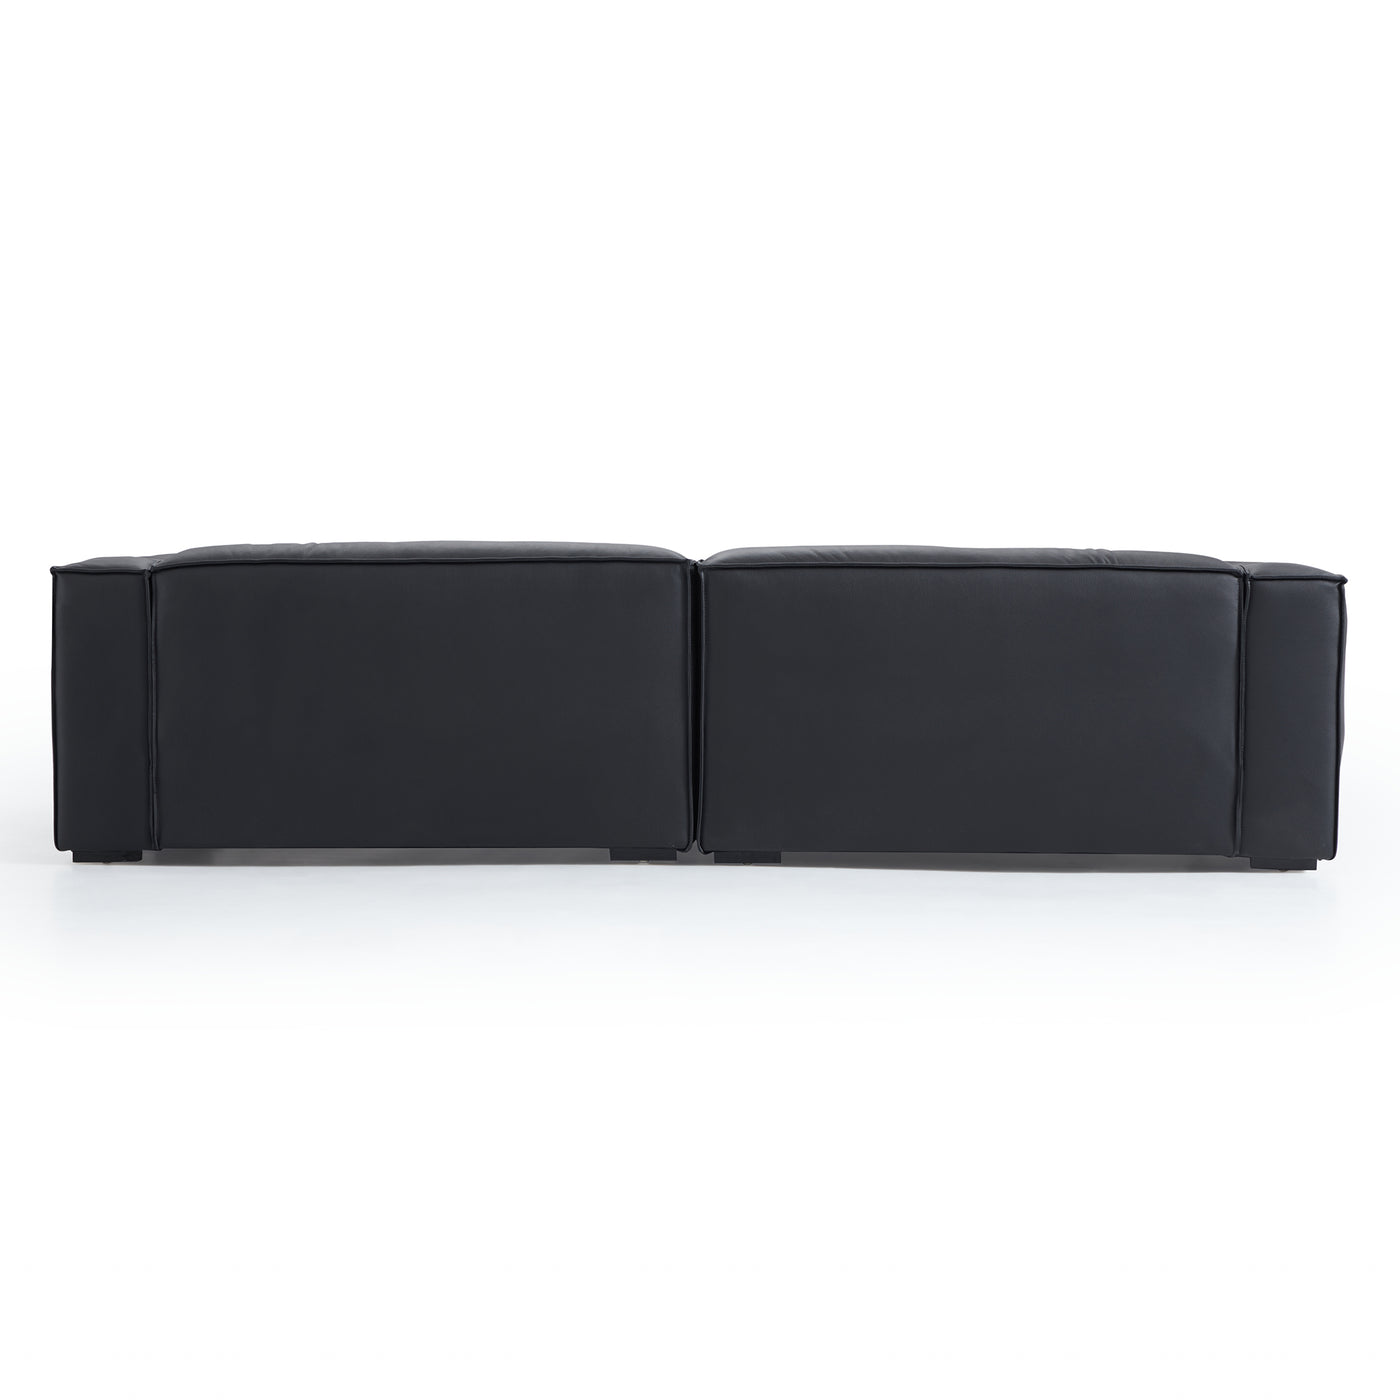 Luxury Minimalist Black Leather Daybed Sofa-Black